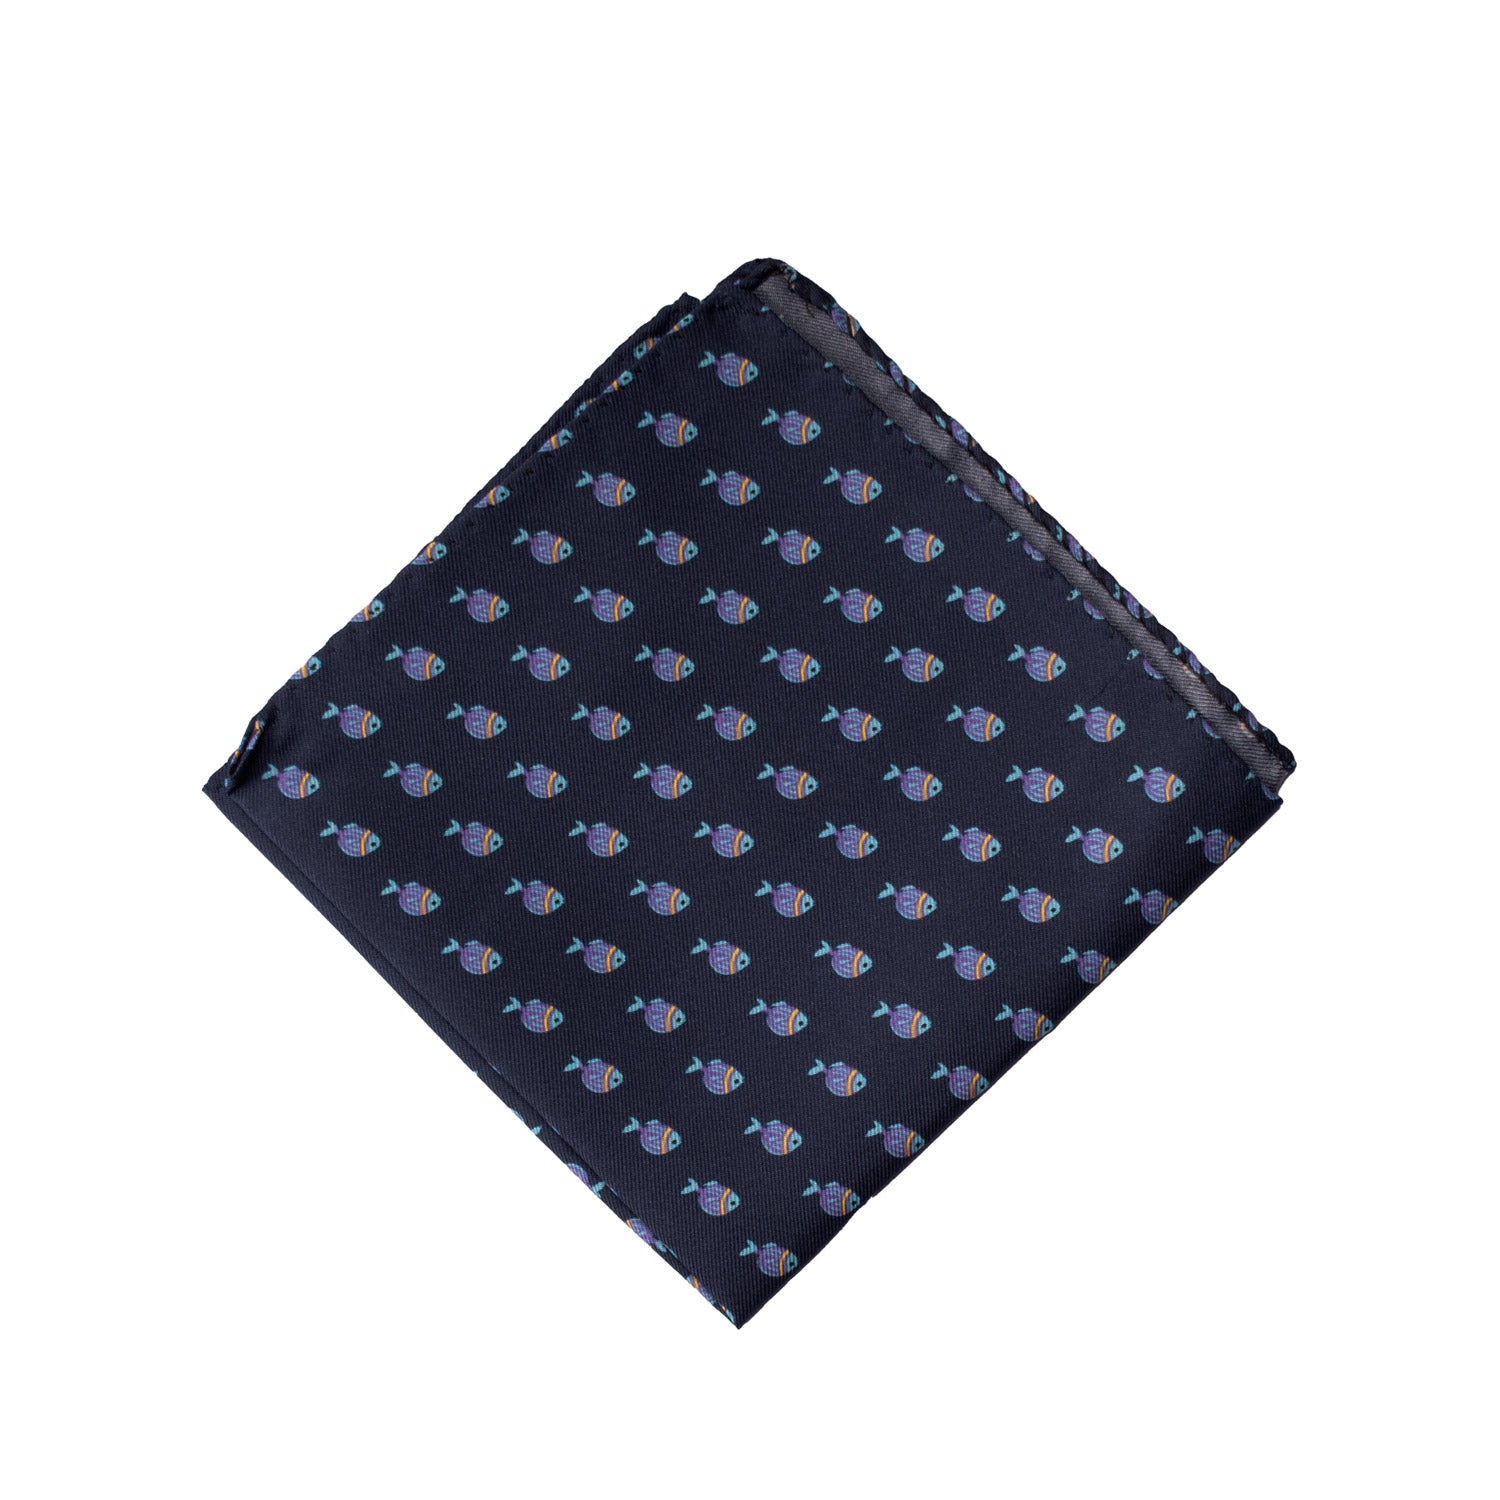 Fazzoletto da Taschino Vintage di Seta Blu con Animali POCV698 Made in Italy Graffeo Cravatte Piegata